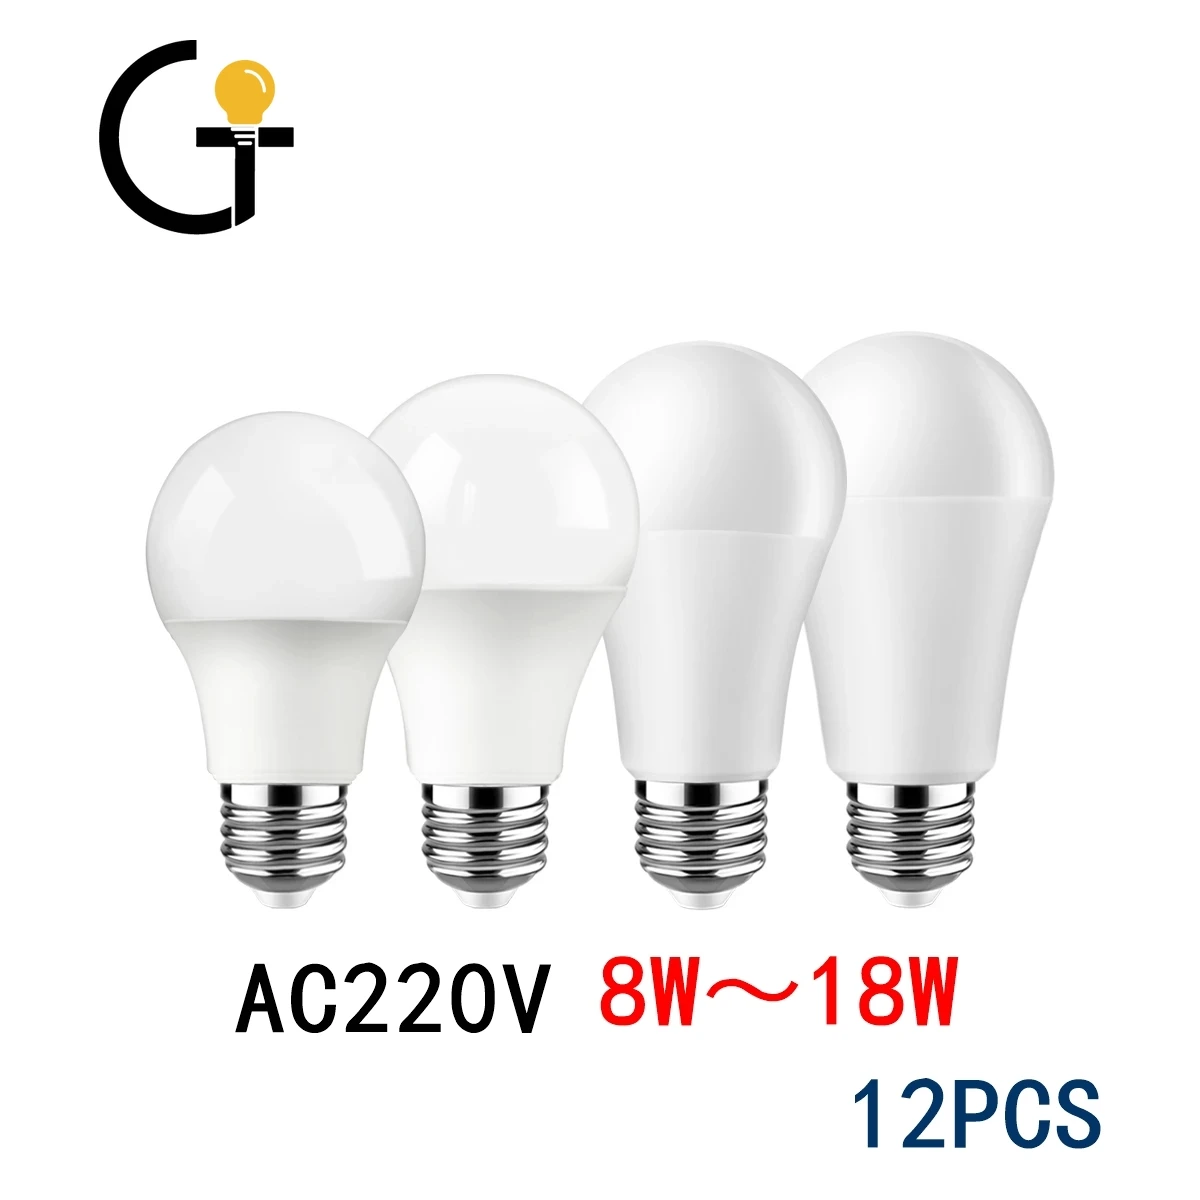 

12PC Led bulb Lamp AC 220V-240V Light Bulb A60 8W-18W B22 E27 bombilla lampara led bulb lighting for living room for Home